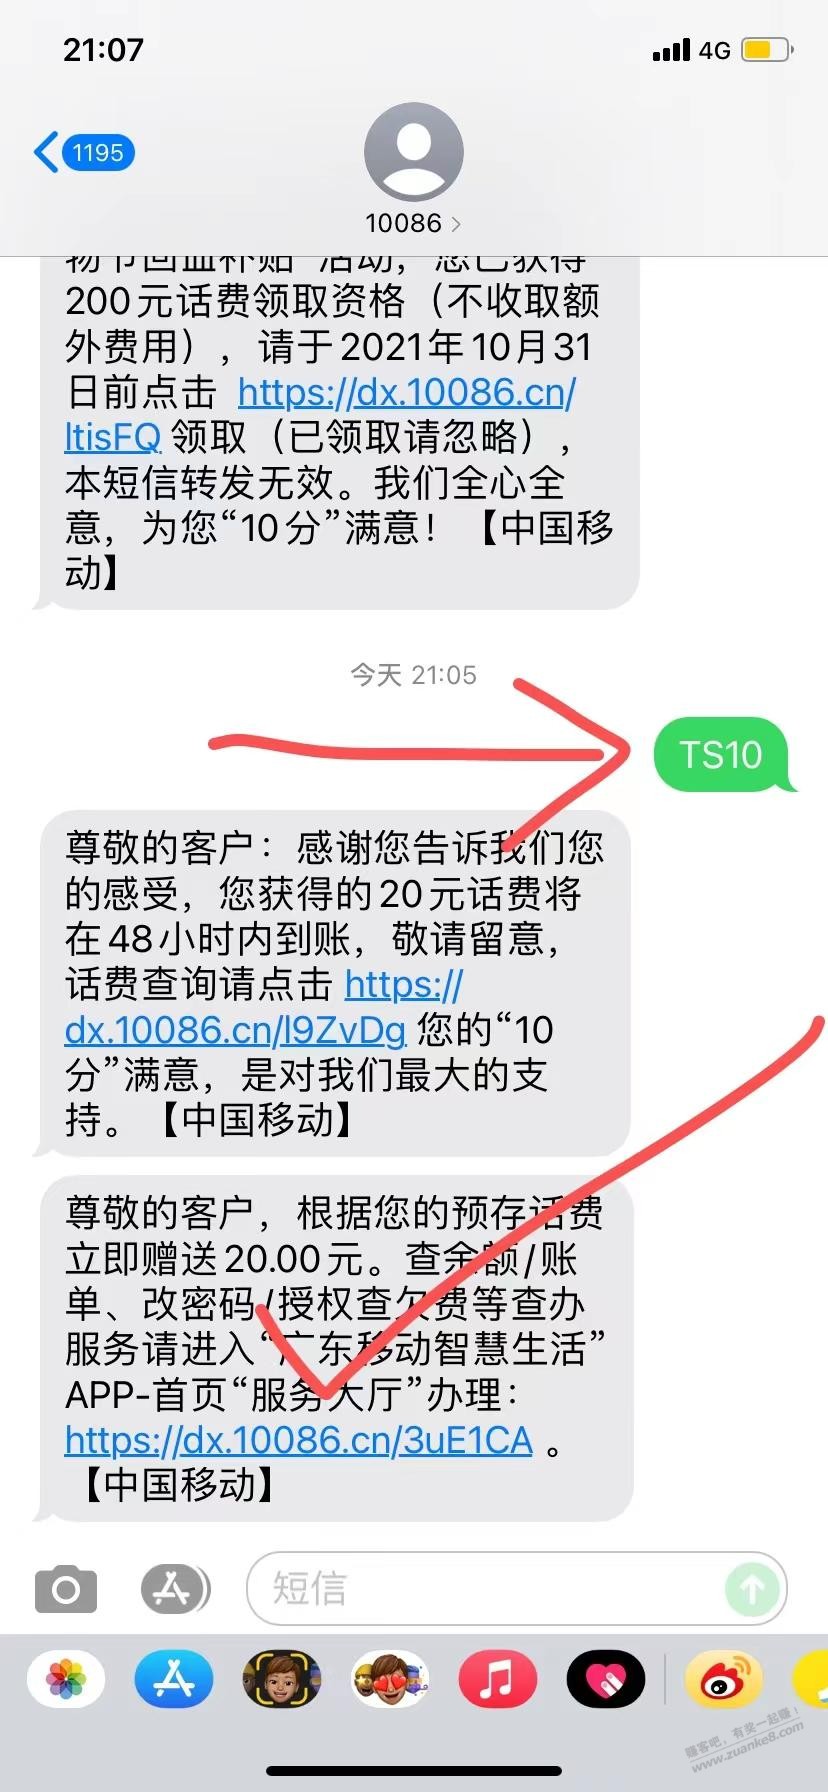 发送TS10到10086获赠20元话费我是广州移动的卡你们试下-惠小助(52huixz.com)